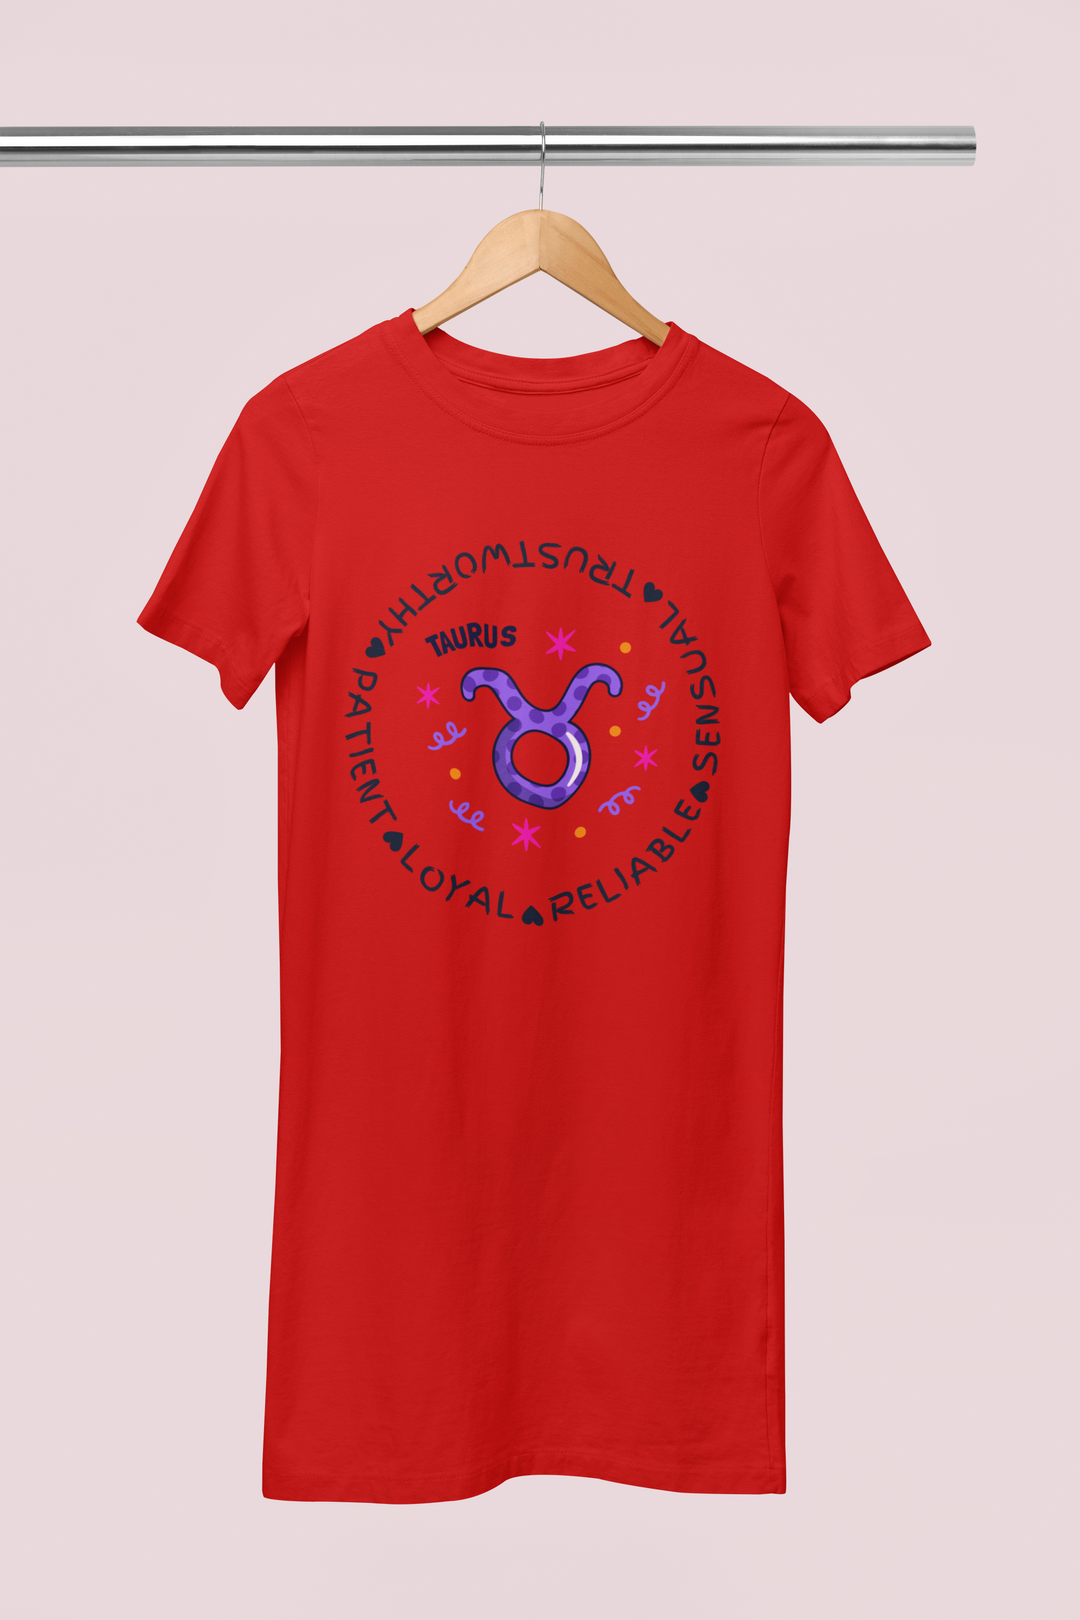 Taurus Zodiac Cotton Night T-Shirt Dress for Women